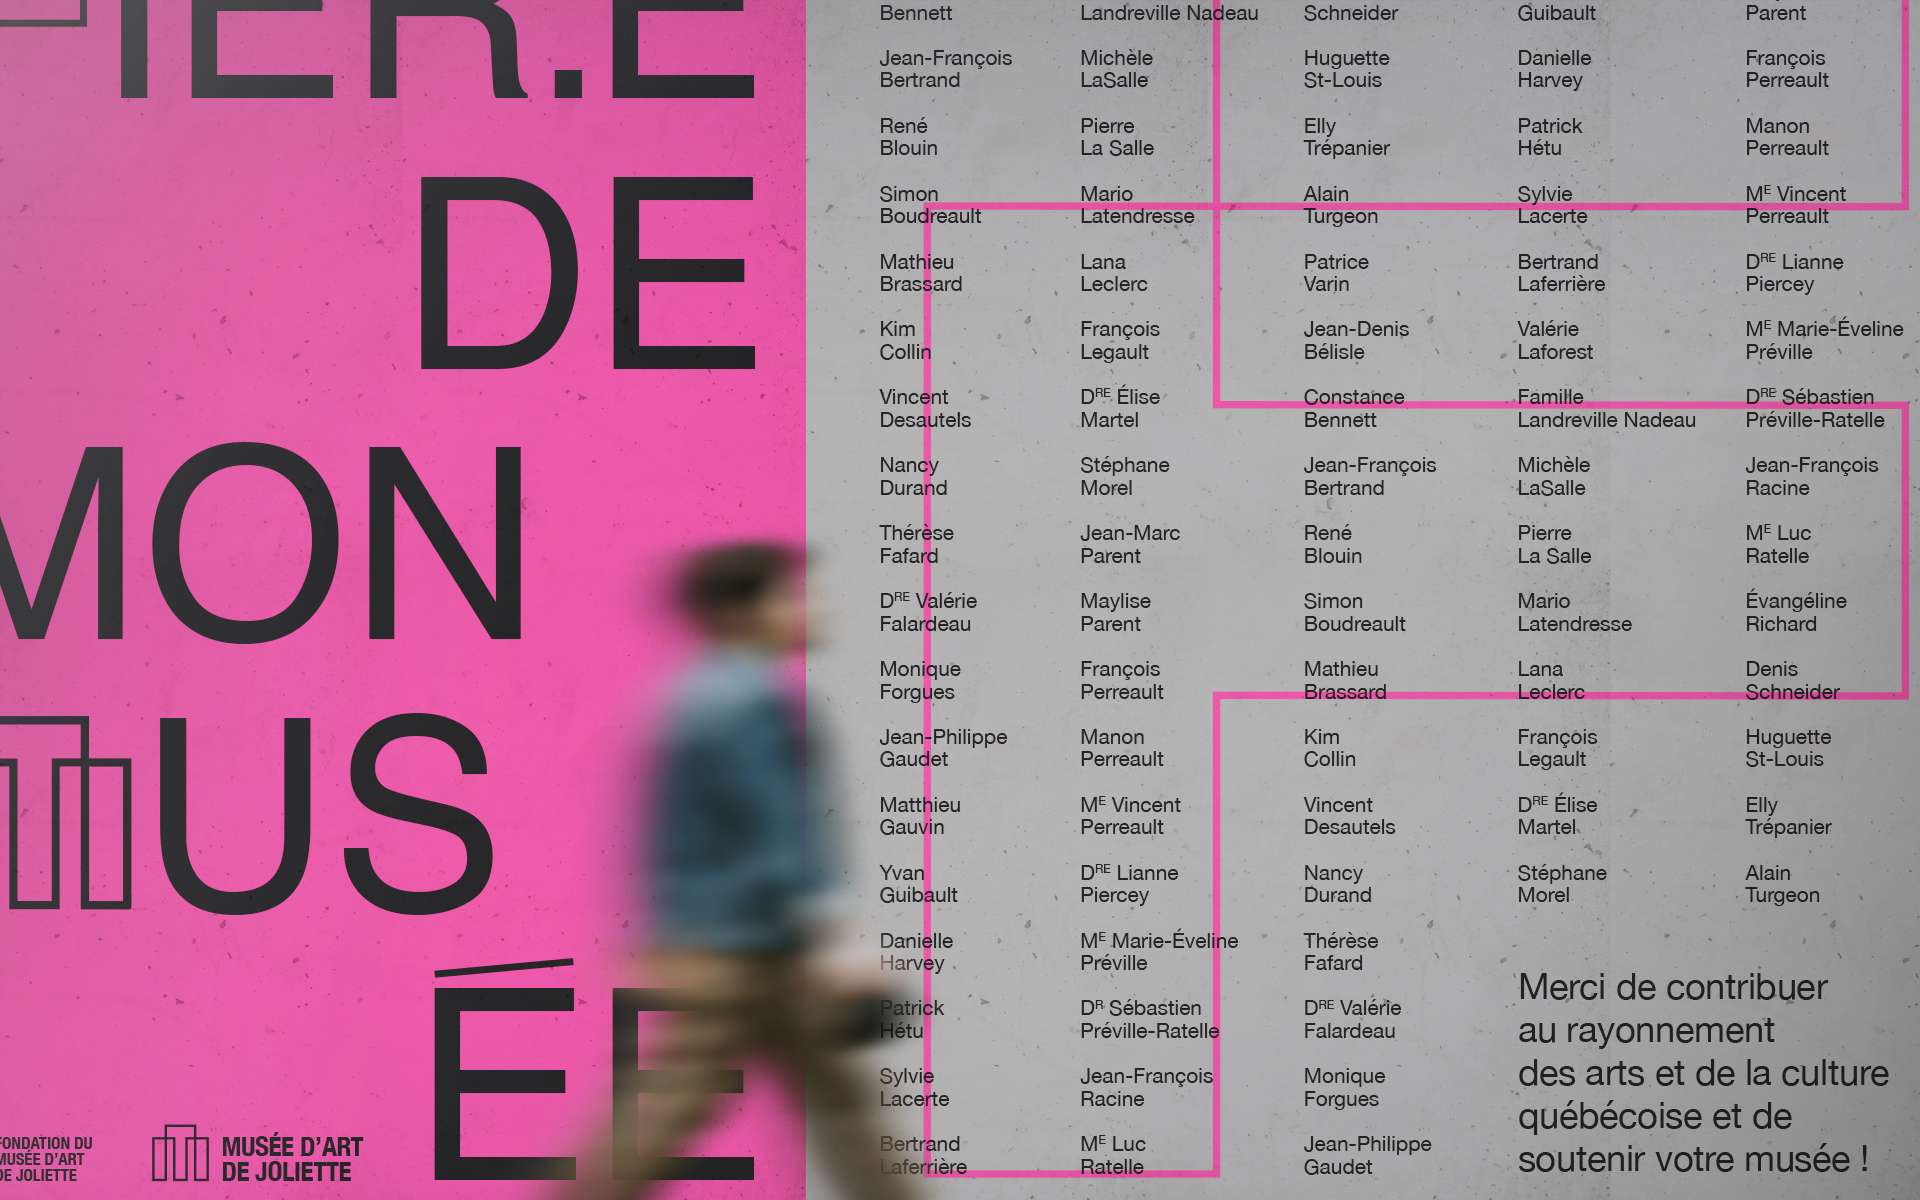 Fondation du Musée d’art de Joliette - Refonte de l’identité visuelle et des messages clés